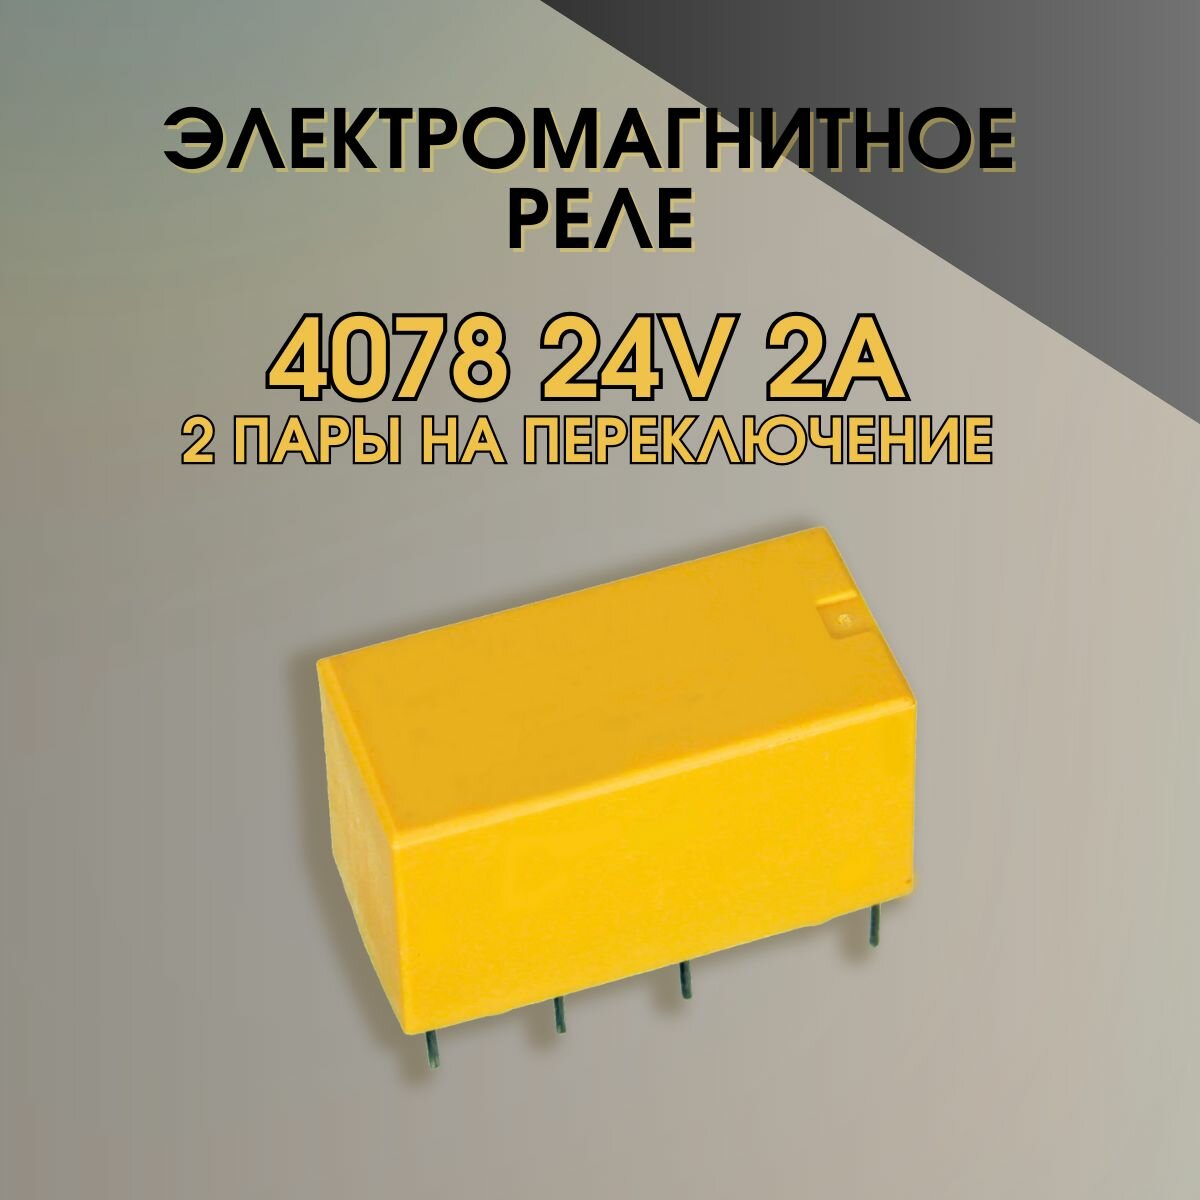 Электромагнитное реле 4078 24V 2A 2 пары на переключение - 1 шт.